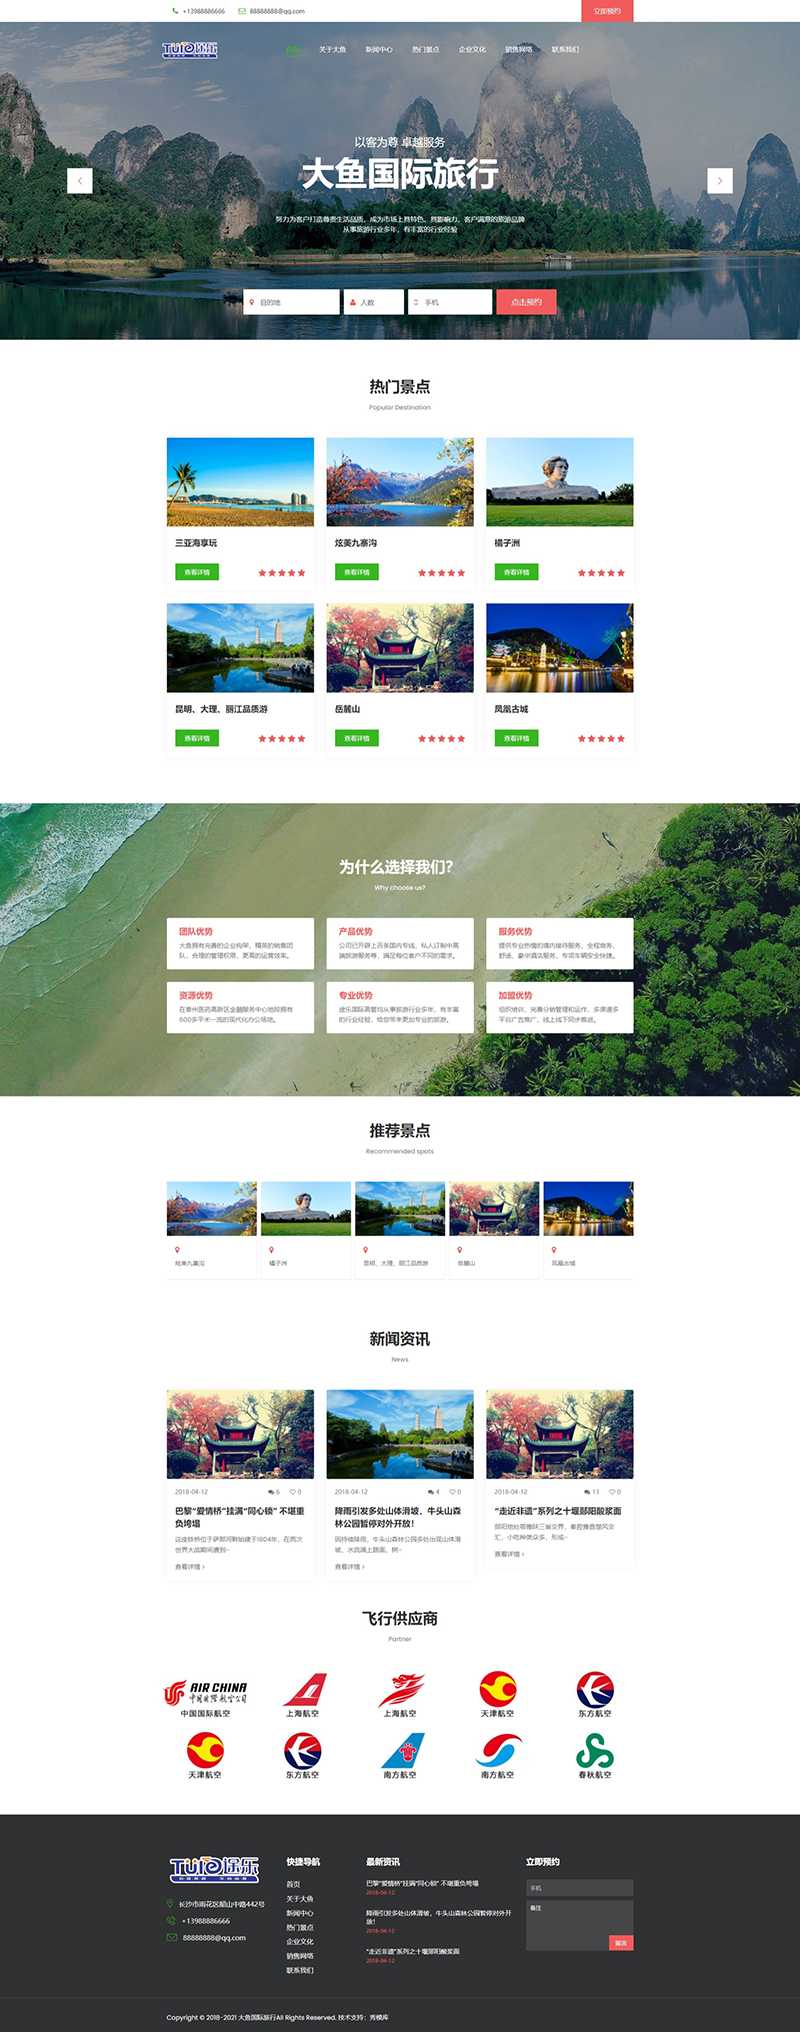 PV15 PBOOTCMS响应式旅行社旅游企业网站模板800.jpg